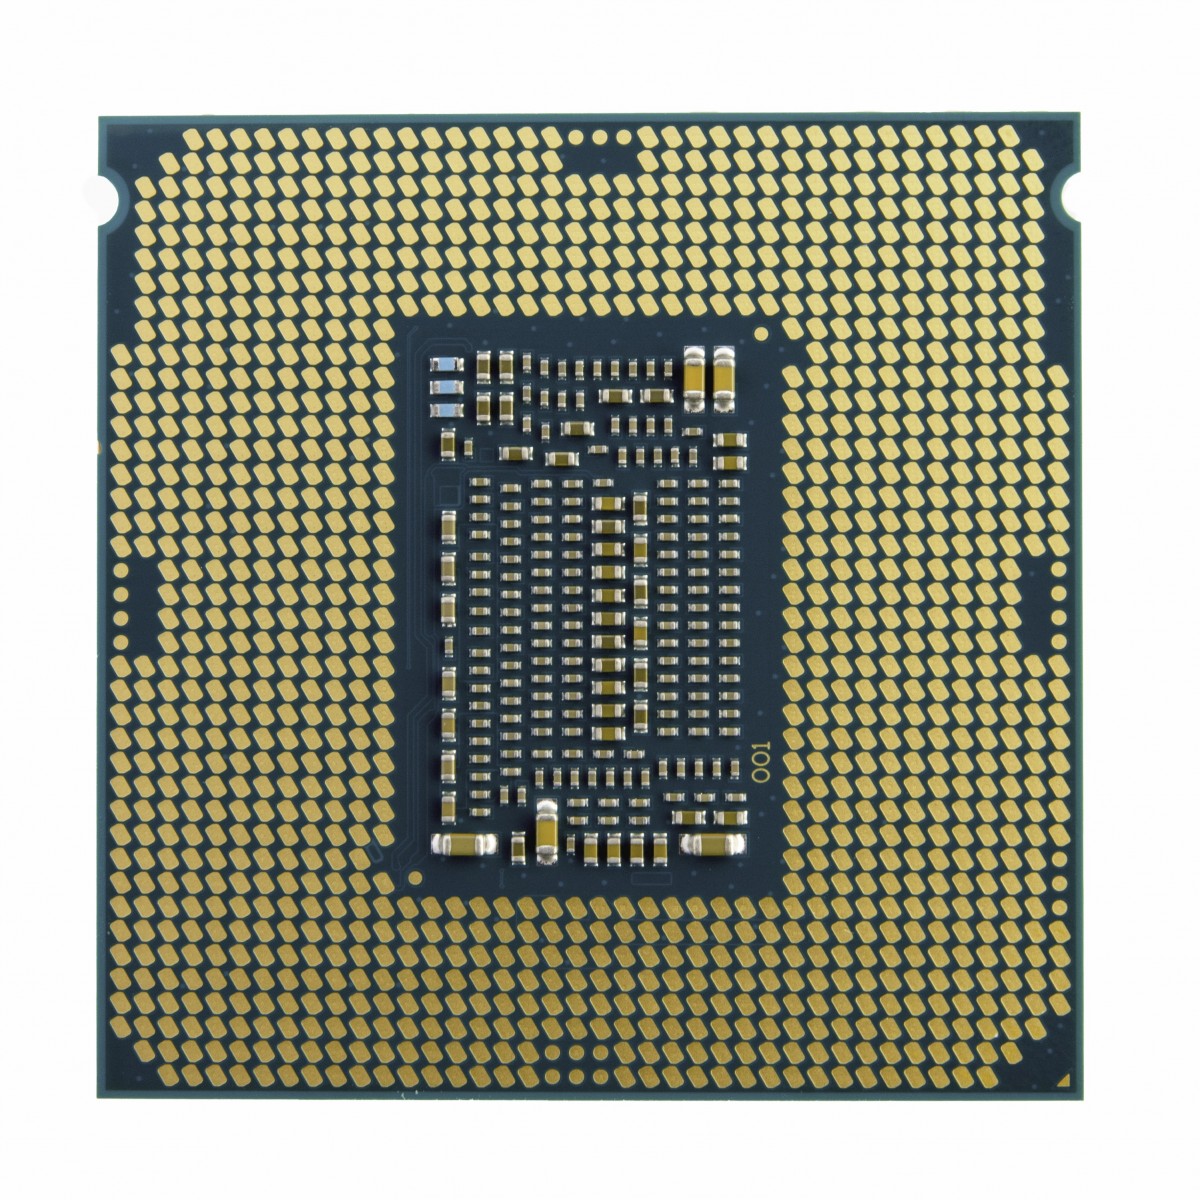 Intel Core I5-10400 Core i5 2.9 GHz - Skt 1200 Comet Lake